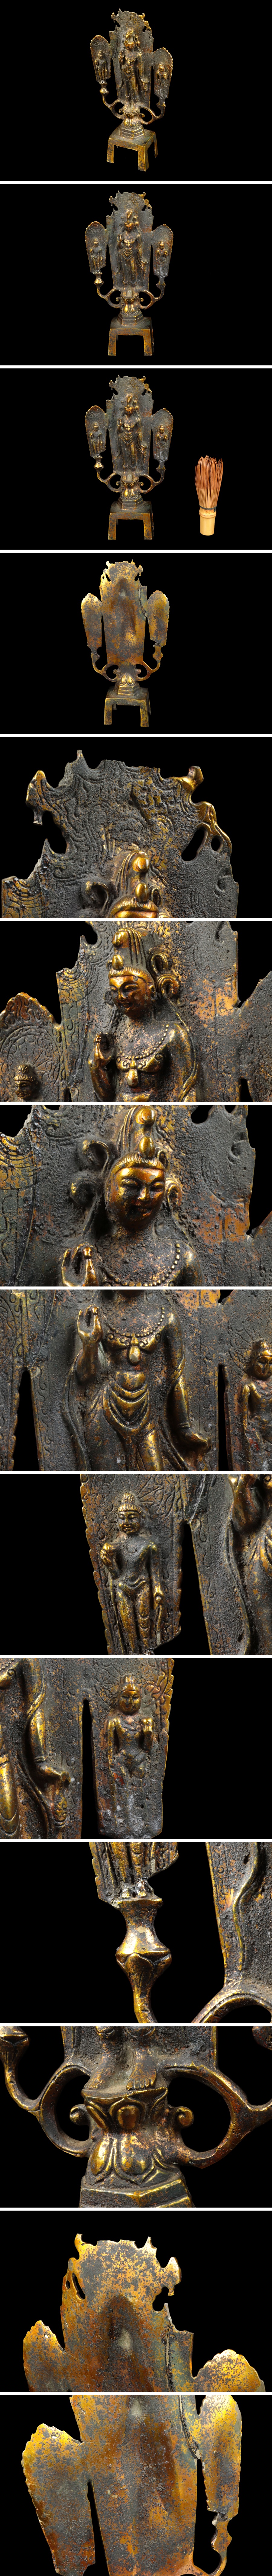 極美品仏教美術 銅器 塗金 菩薩像 仏像 置物 高さ:約23cm 骨董品 美術品 0254tfz 仏像